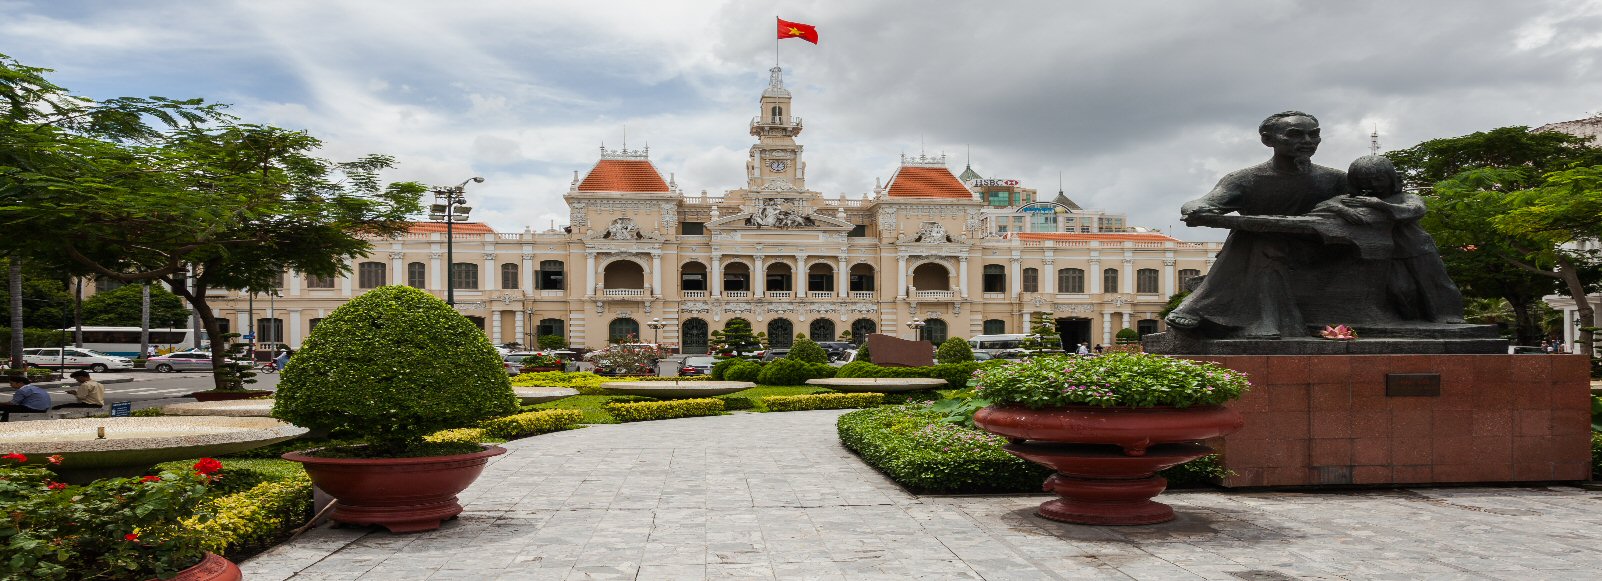 Ofertas de Traslados en Ho Chi Minh. Traslados económicos en Ho Chi Minh 